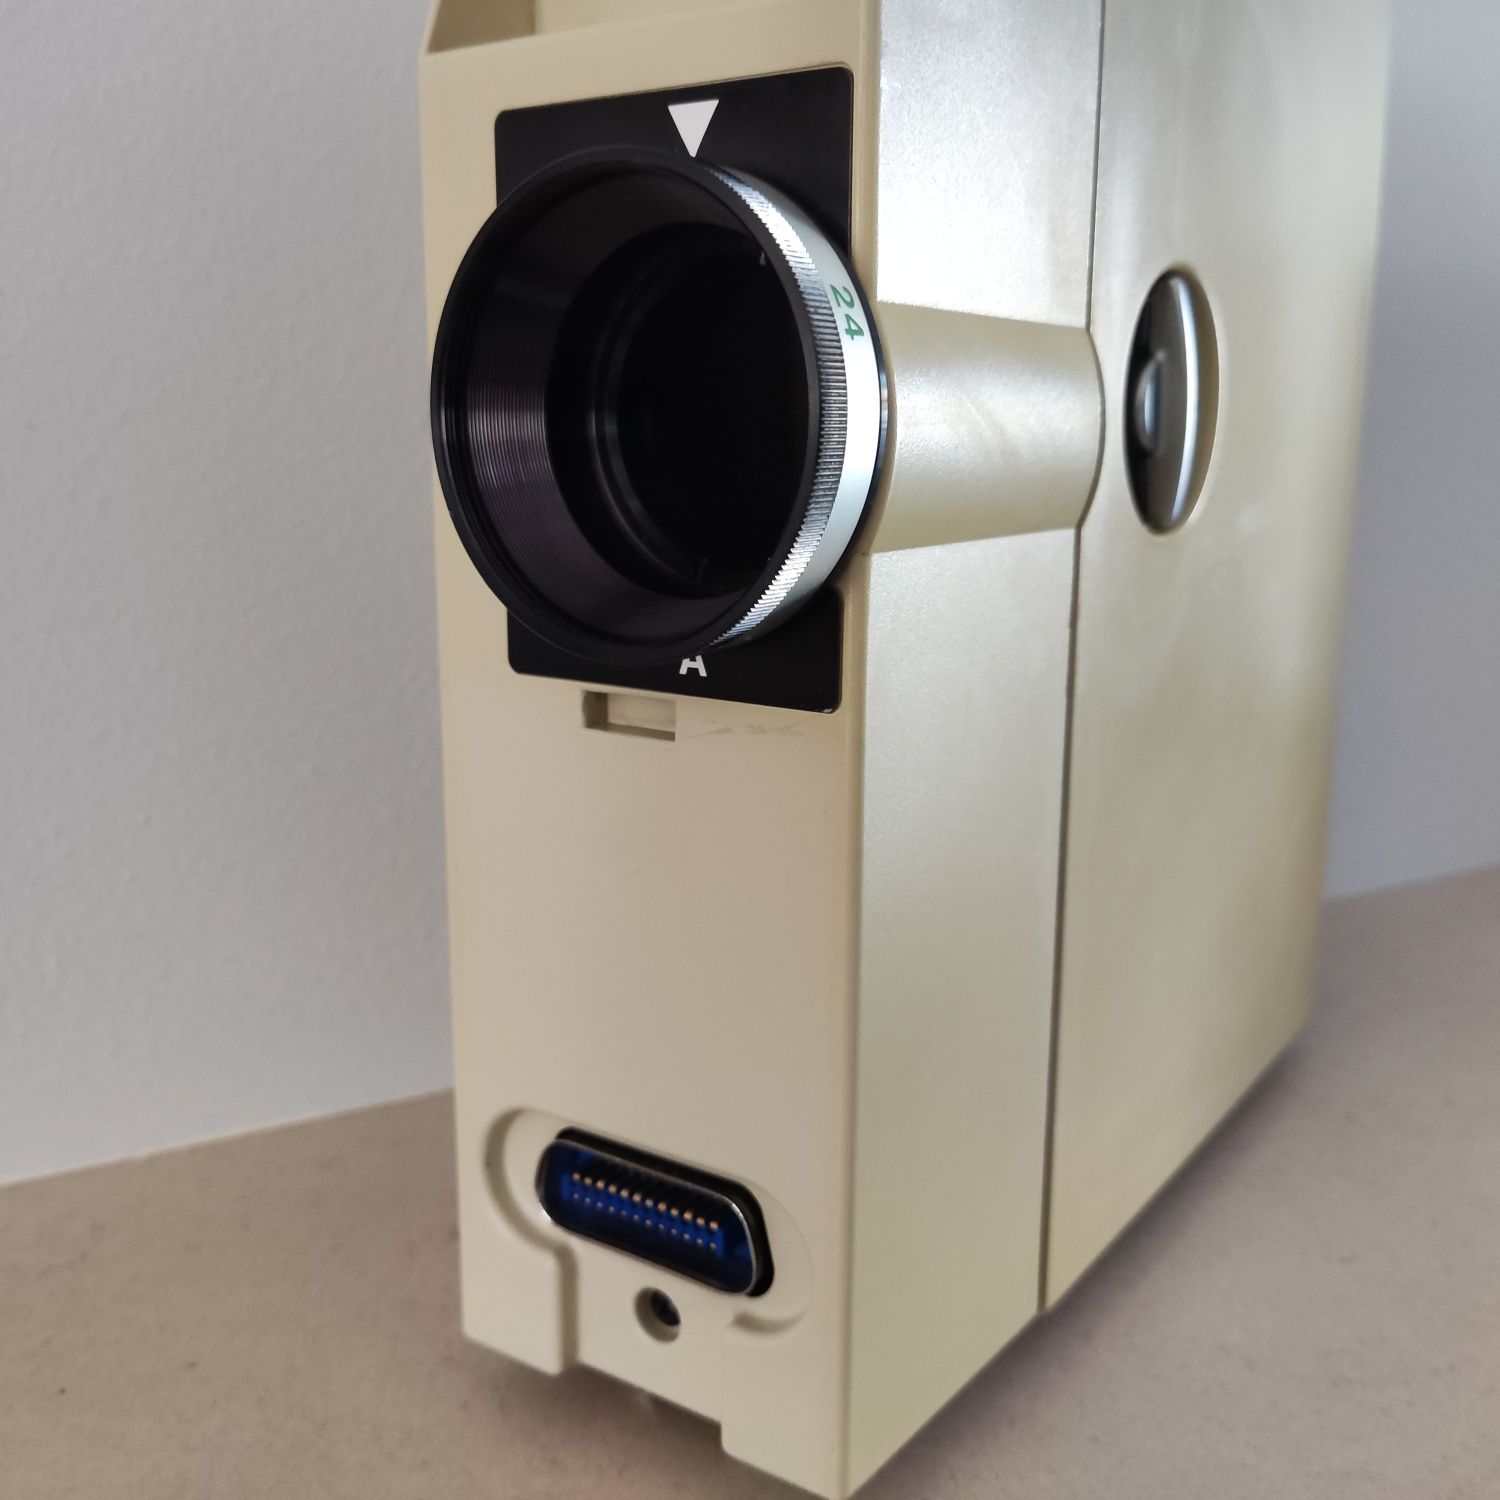 CANON CF100 A Recorder 16mm Microfilme (camera head only)